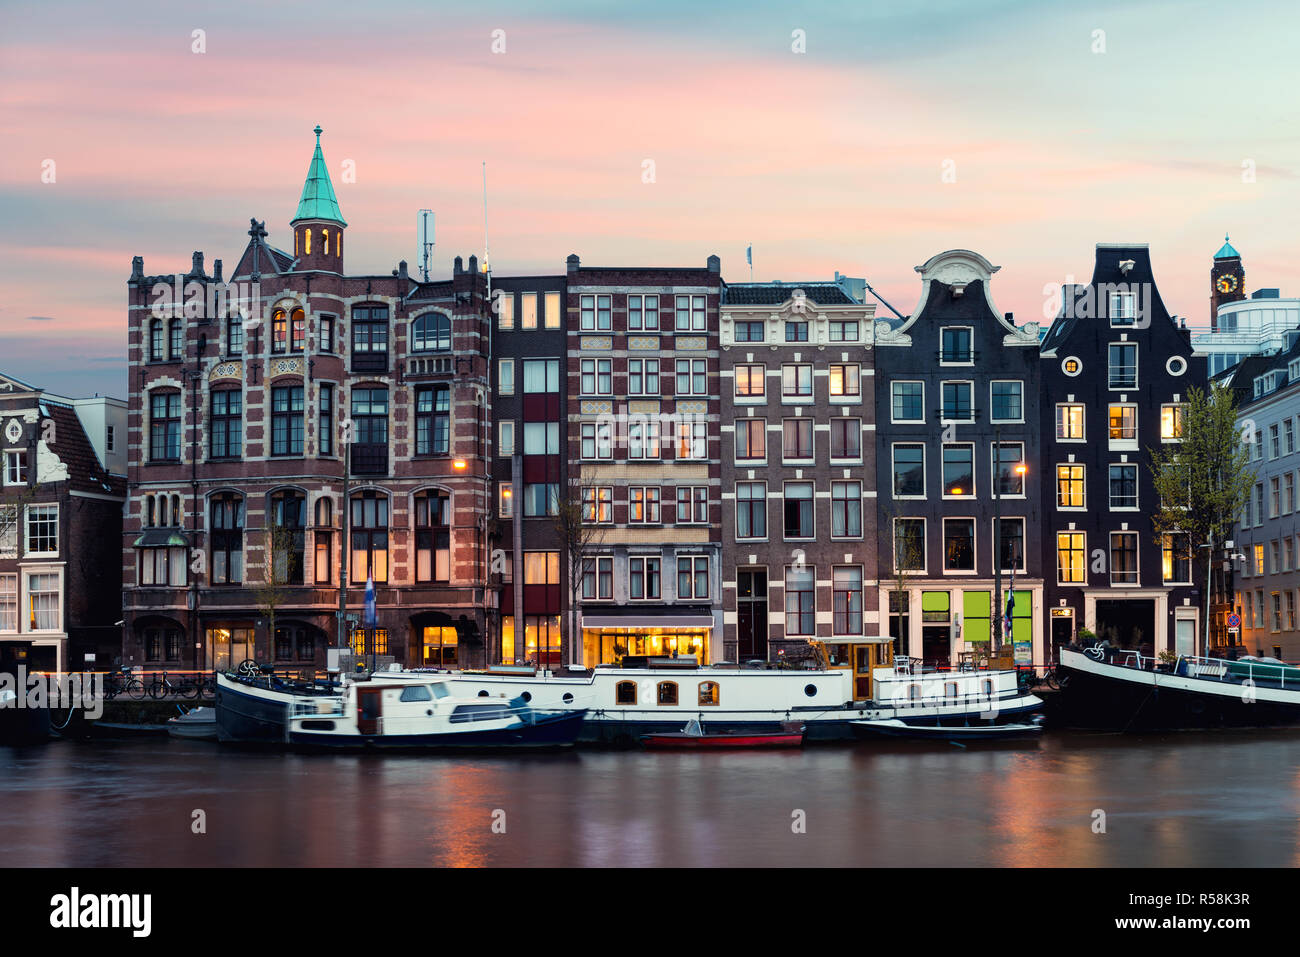 Vue sur la ville de nuit Amsterdam Pays-Bas maisons traditionnelles avec la rivière Amstel à Amsterdam, Pays-Bas Banque D'Images